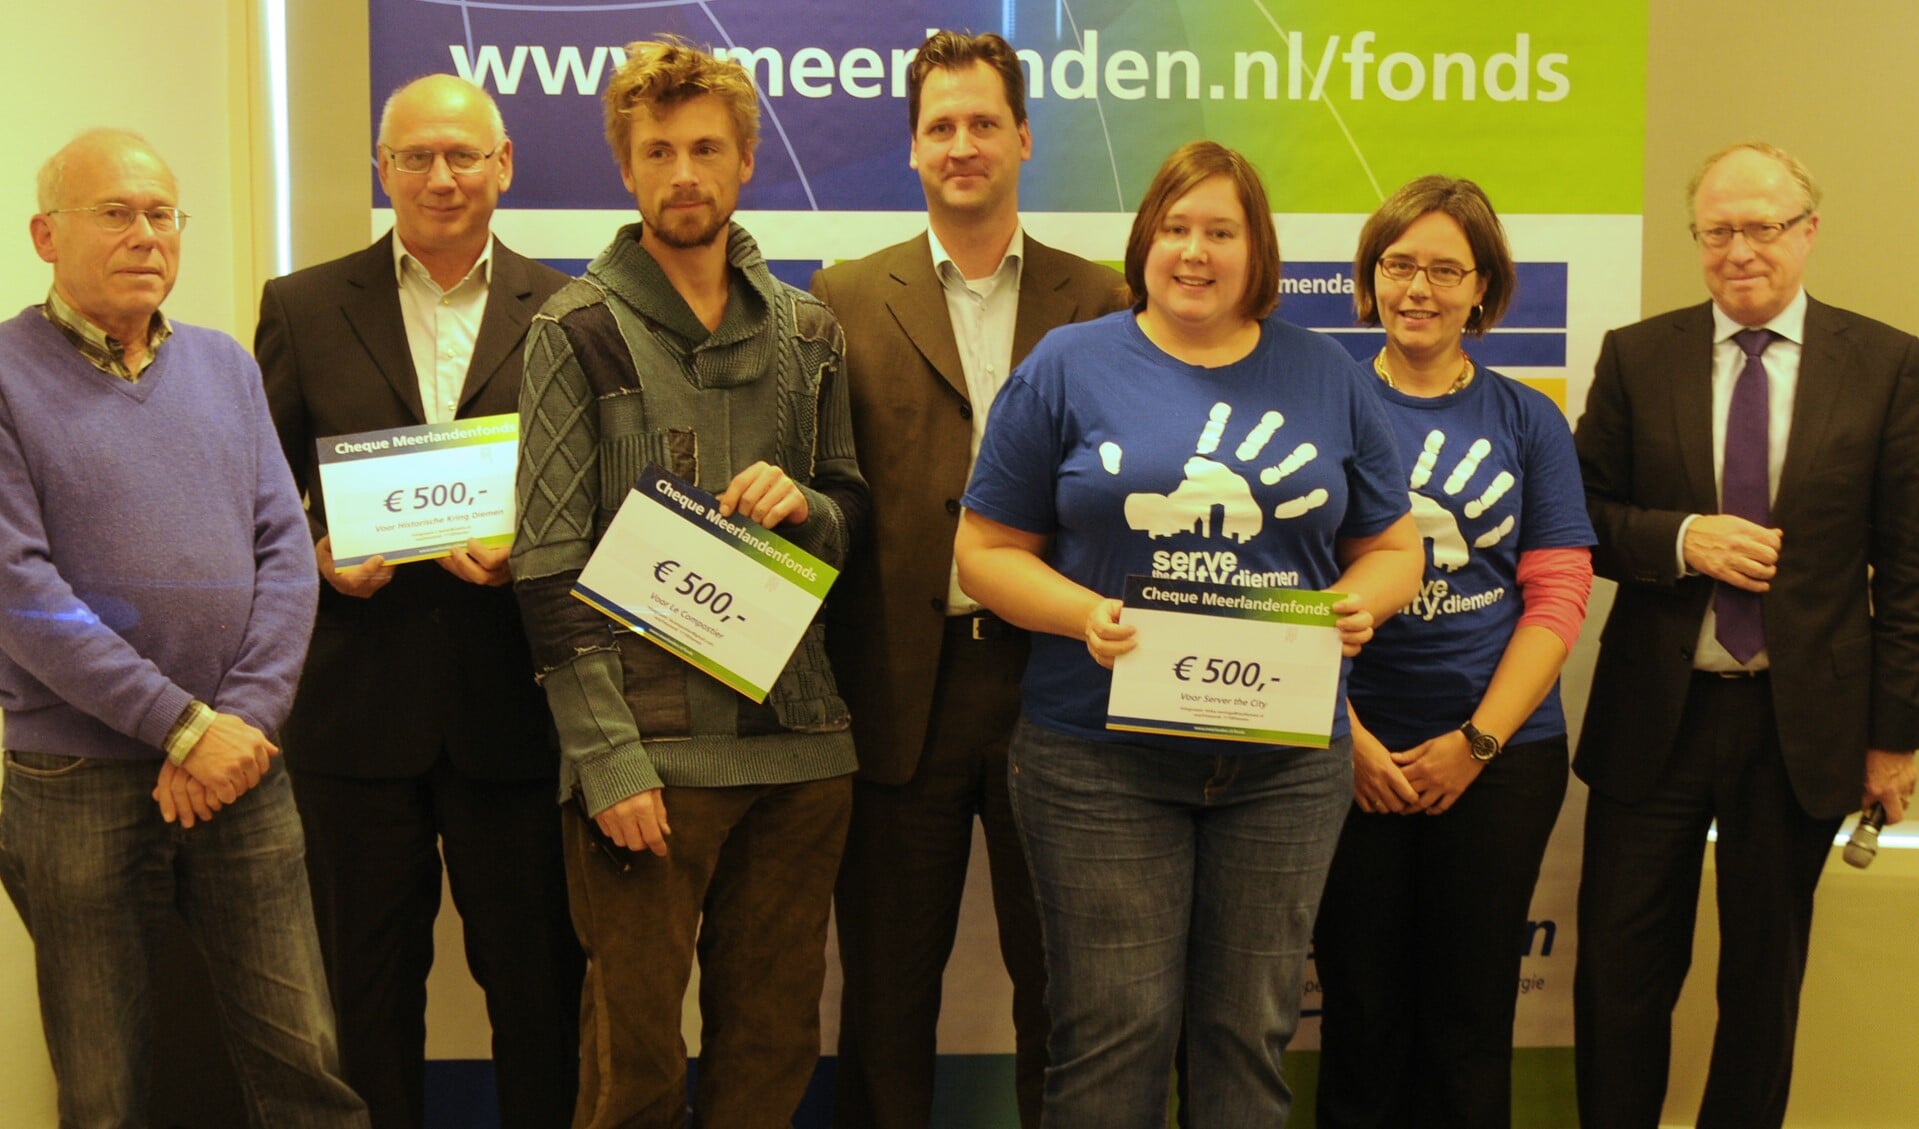 De aanwezige Diemense winnaars kregen een cheque uit handen van wethouder Jeroen Klaasse